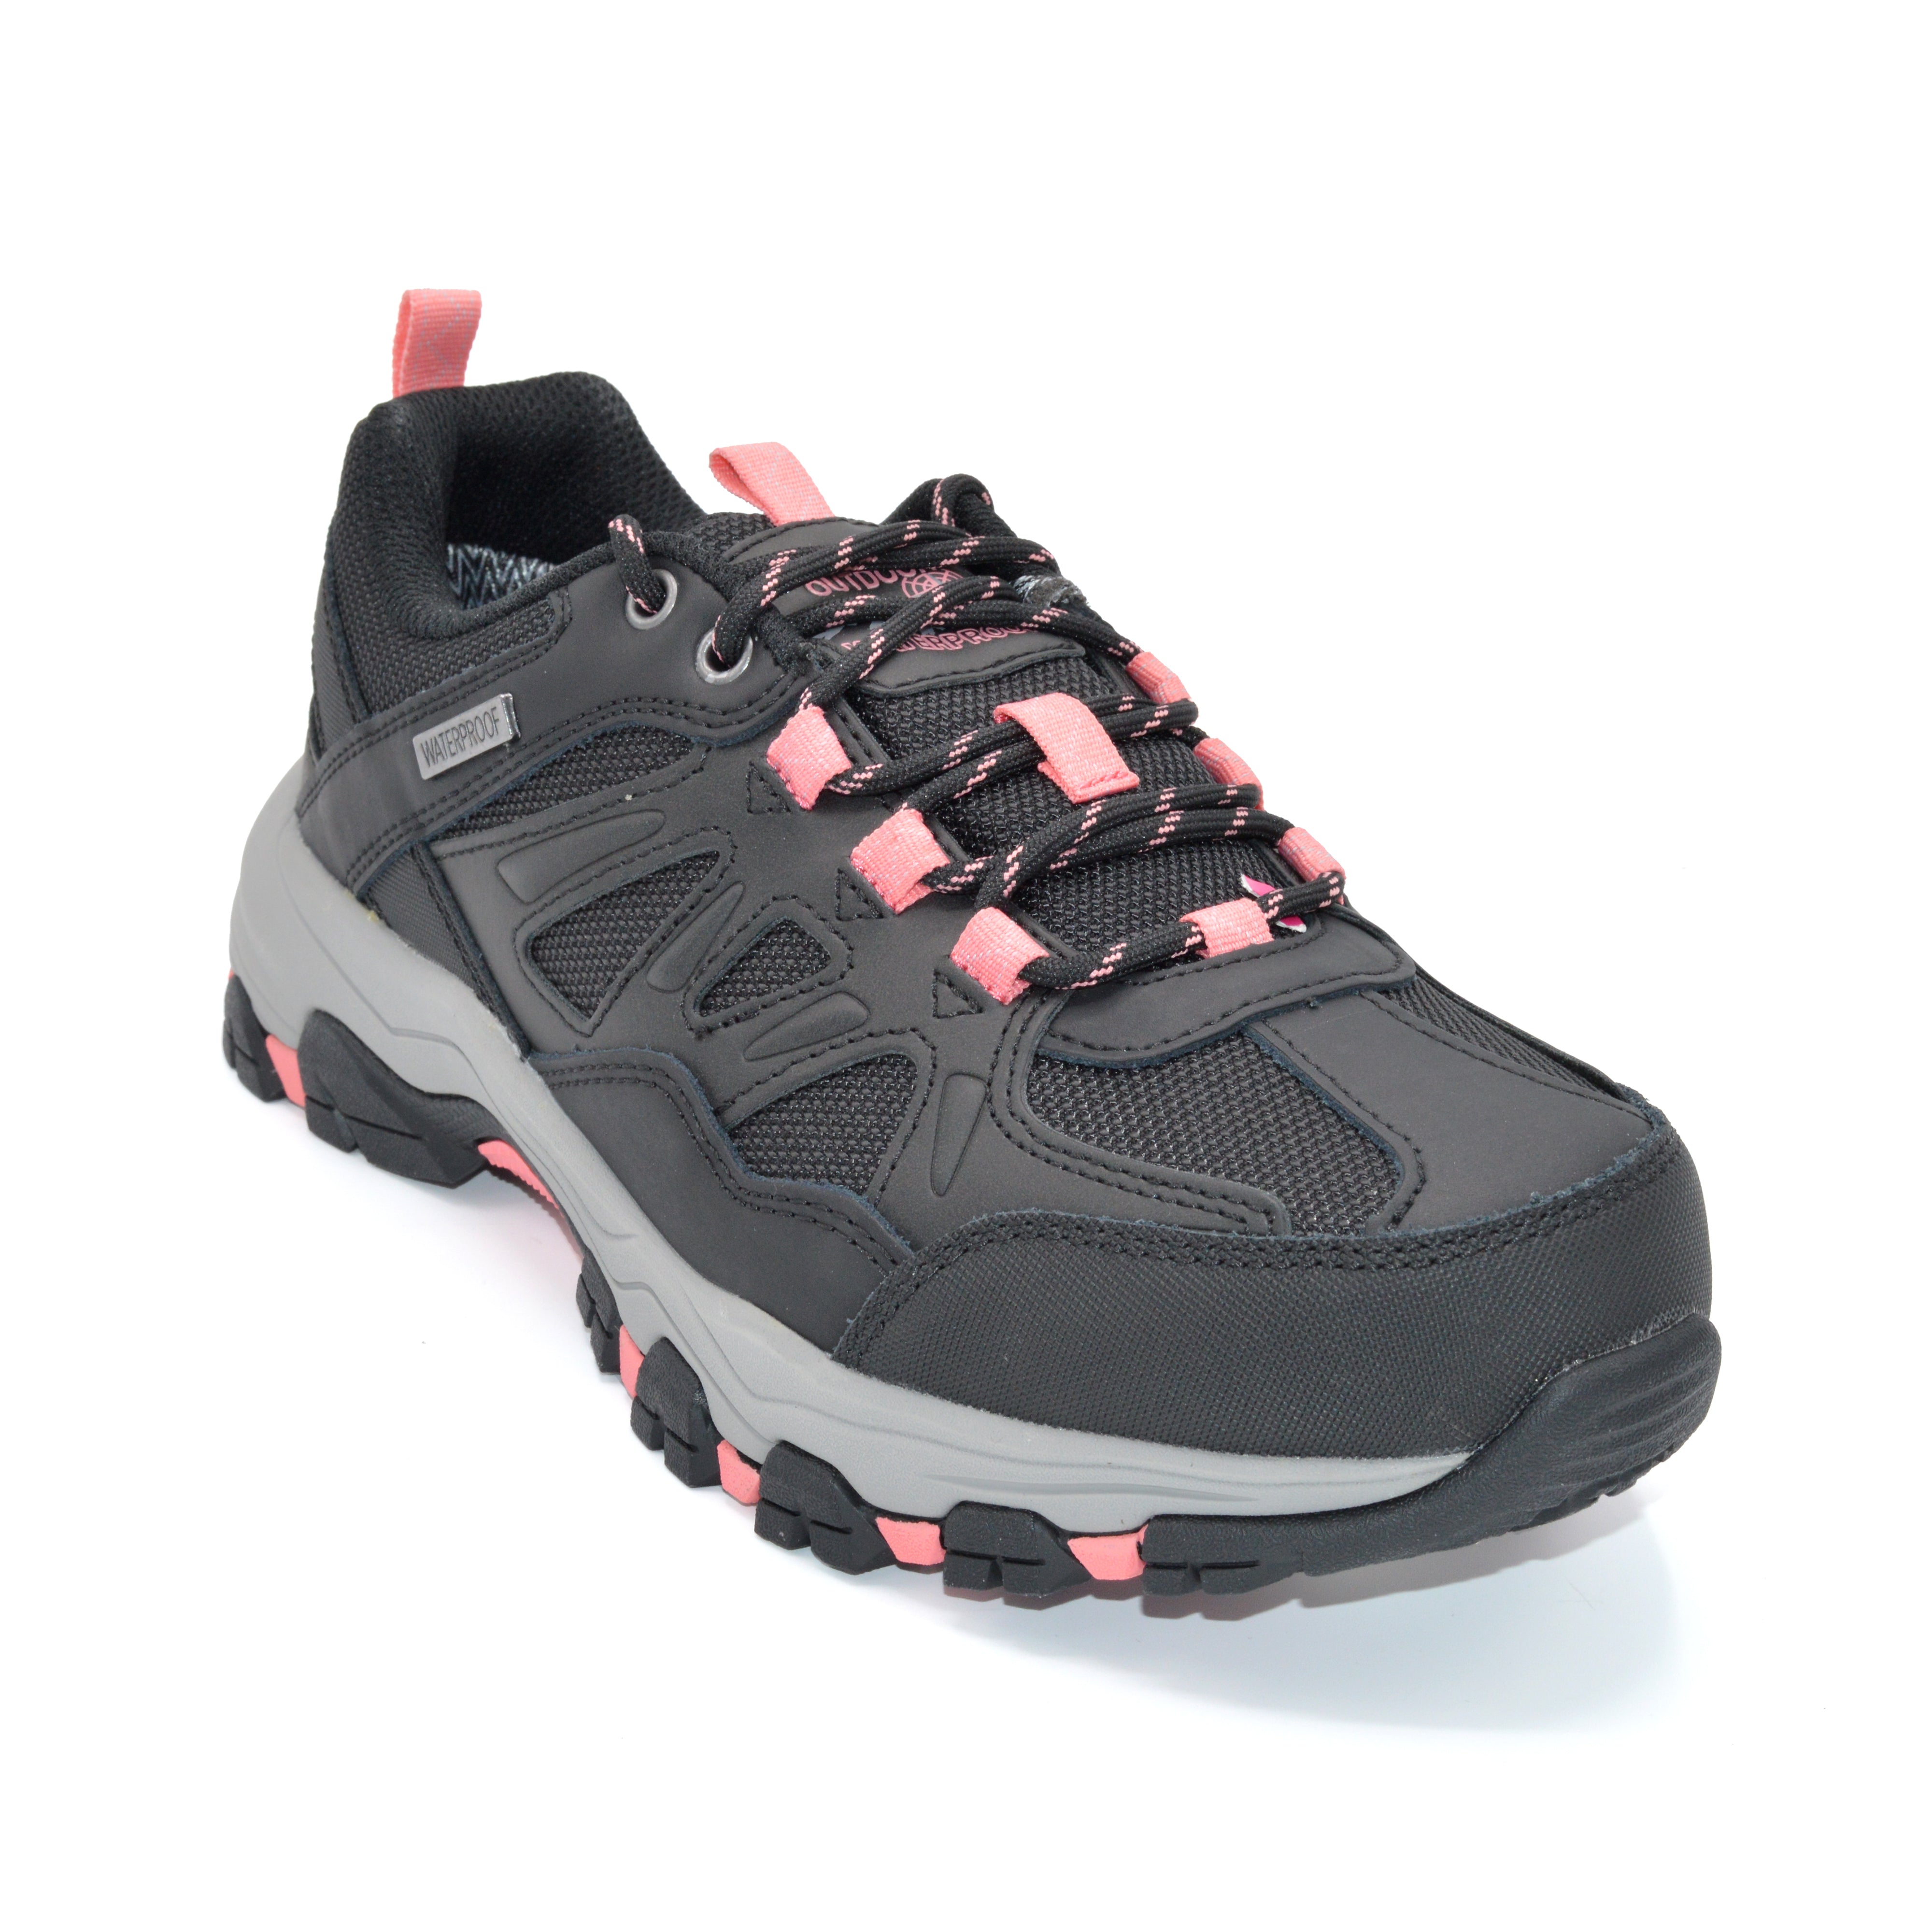 Skechers Selman West- Ladies Wide Fit Hiking Trainer - Black/Pink ...